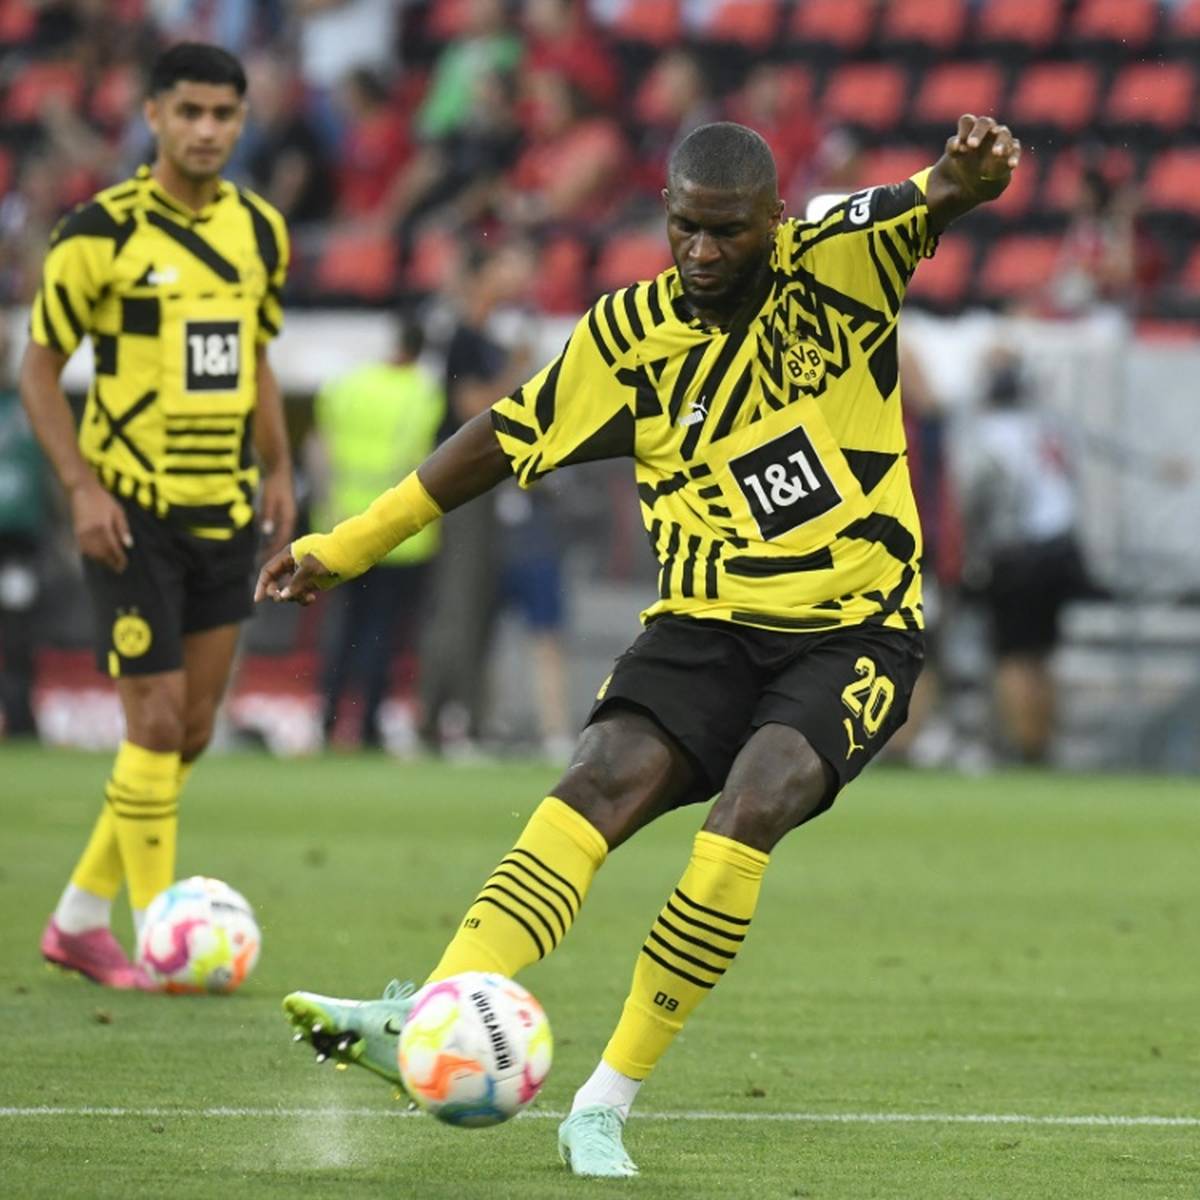 Angreifer Anthony Modeste ist nach seinem erfolgreichen Debüt für Borussia Dortmund beim Sieg beim SC Freiburg glücklich, sieht aber noch Steigerungspotenzial.